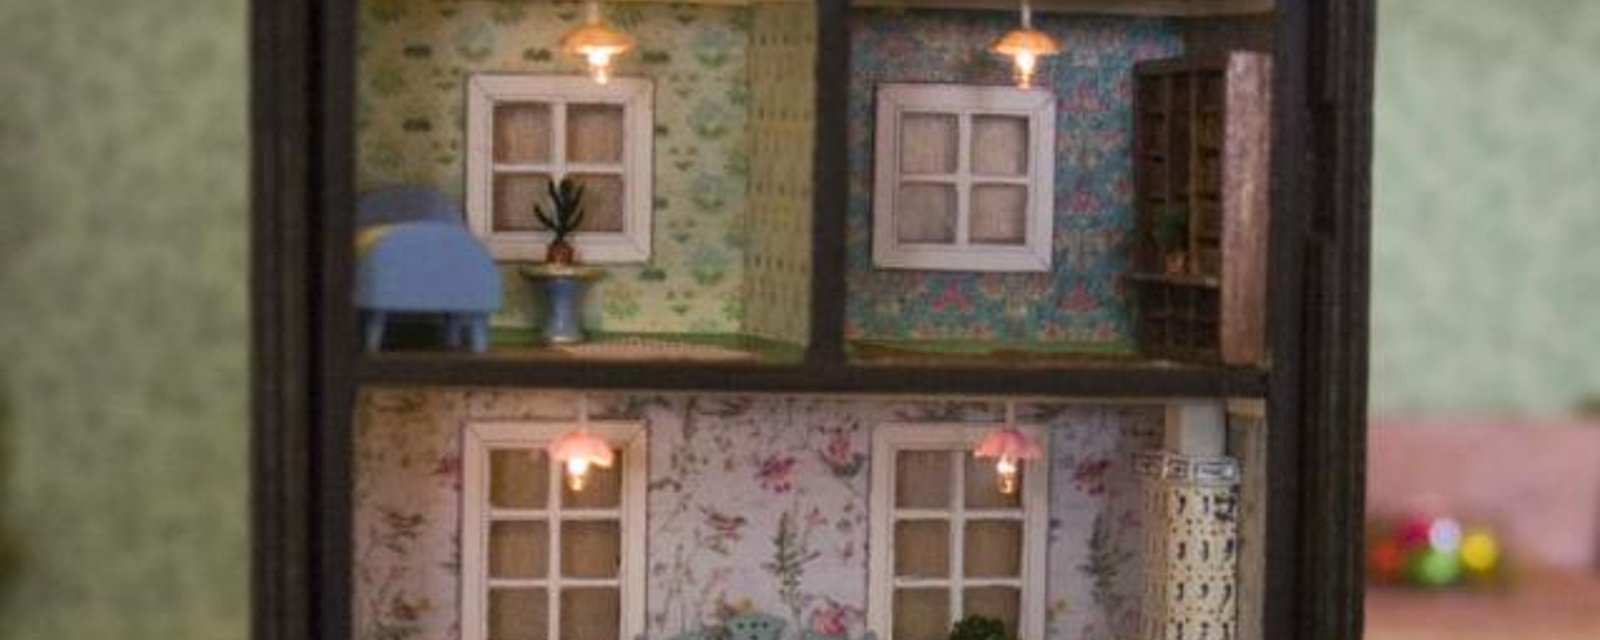 6 idées pour transformer une vieille étagère en jolie maison de poupées!